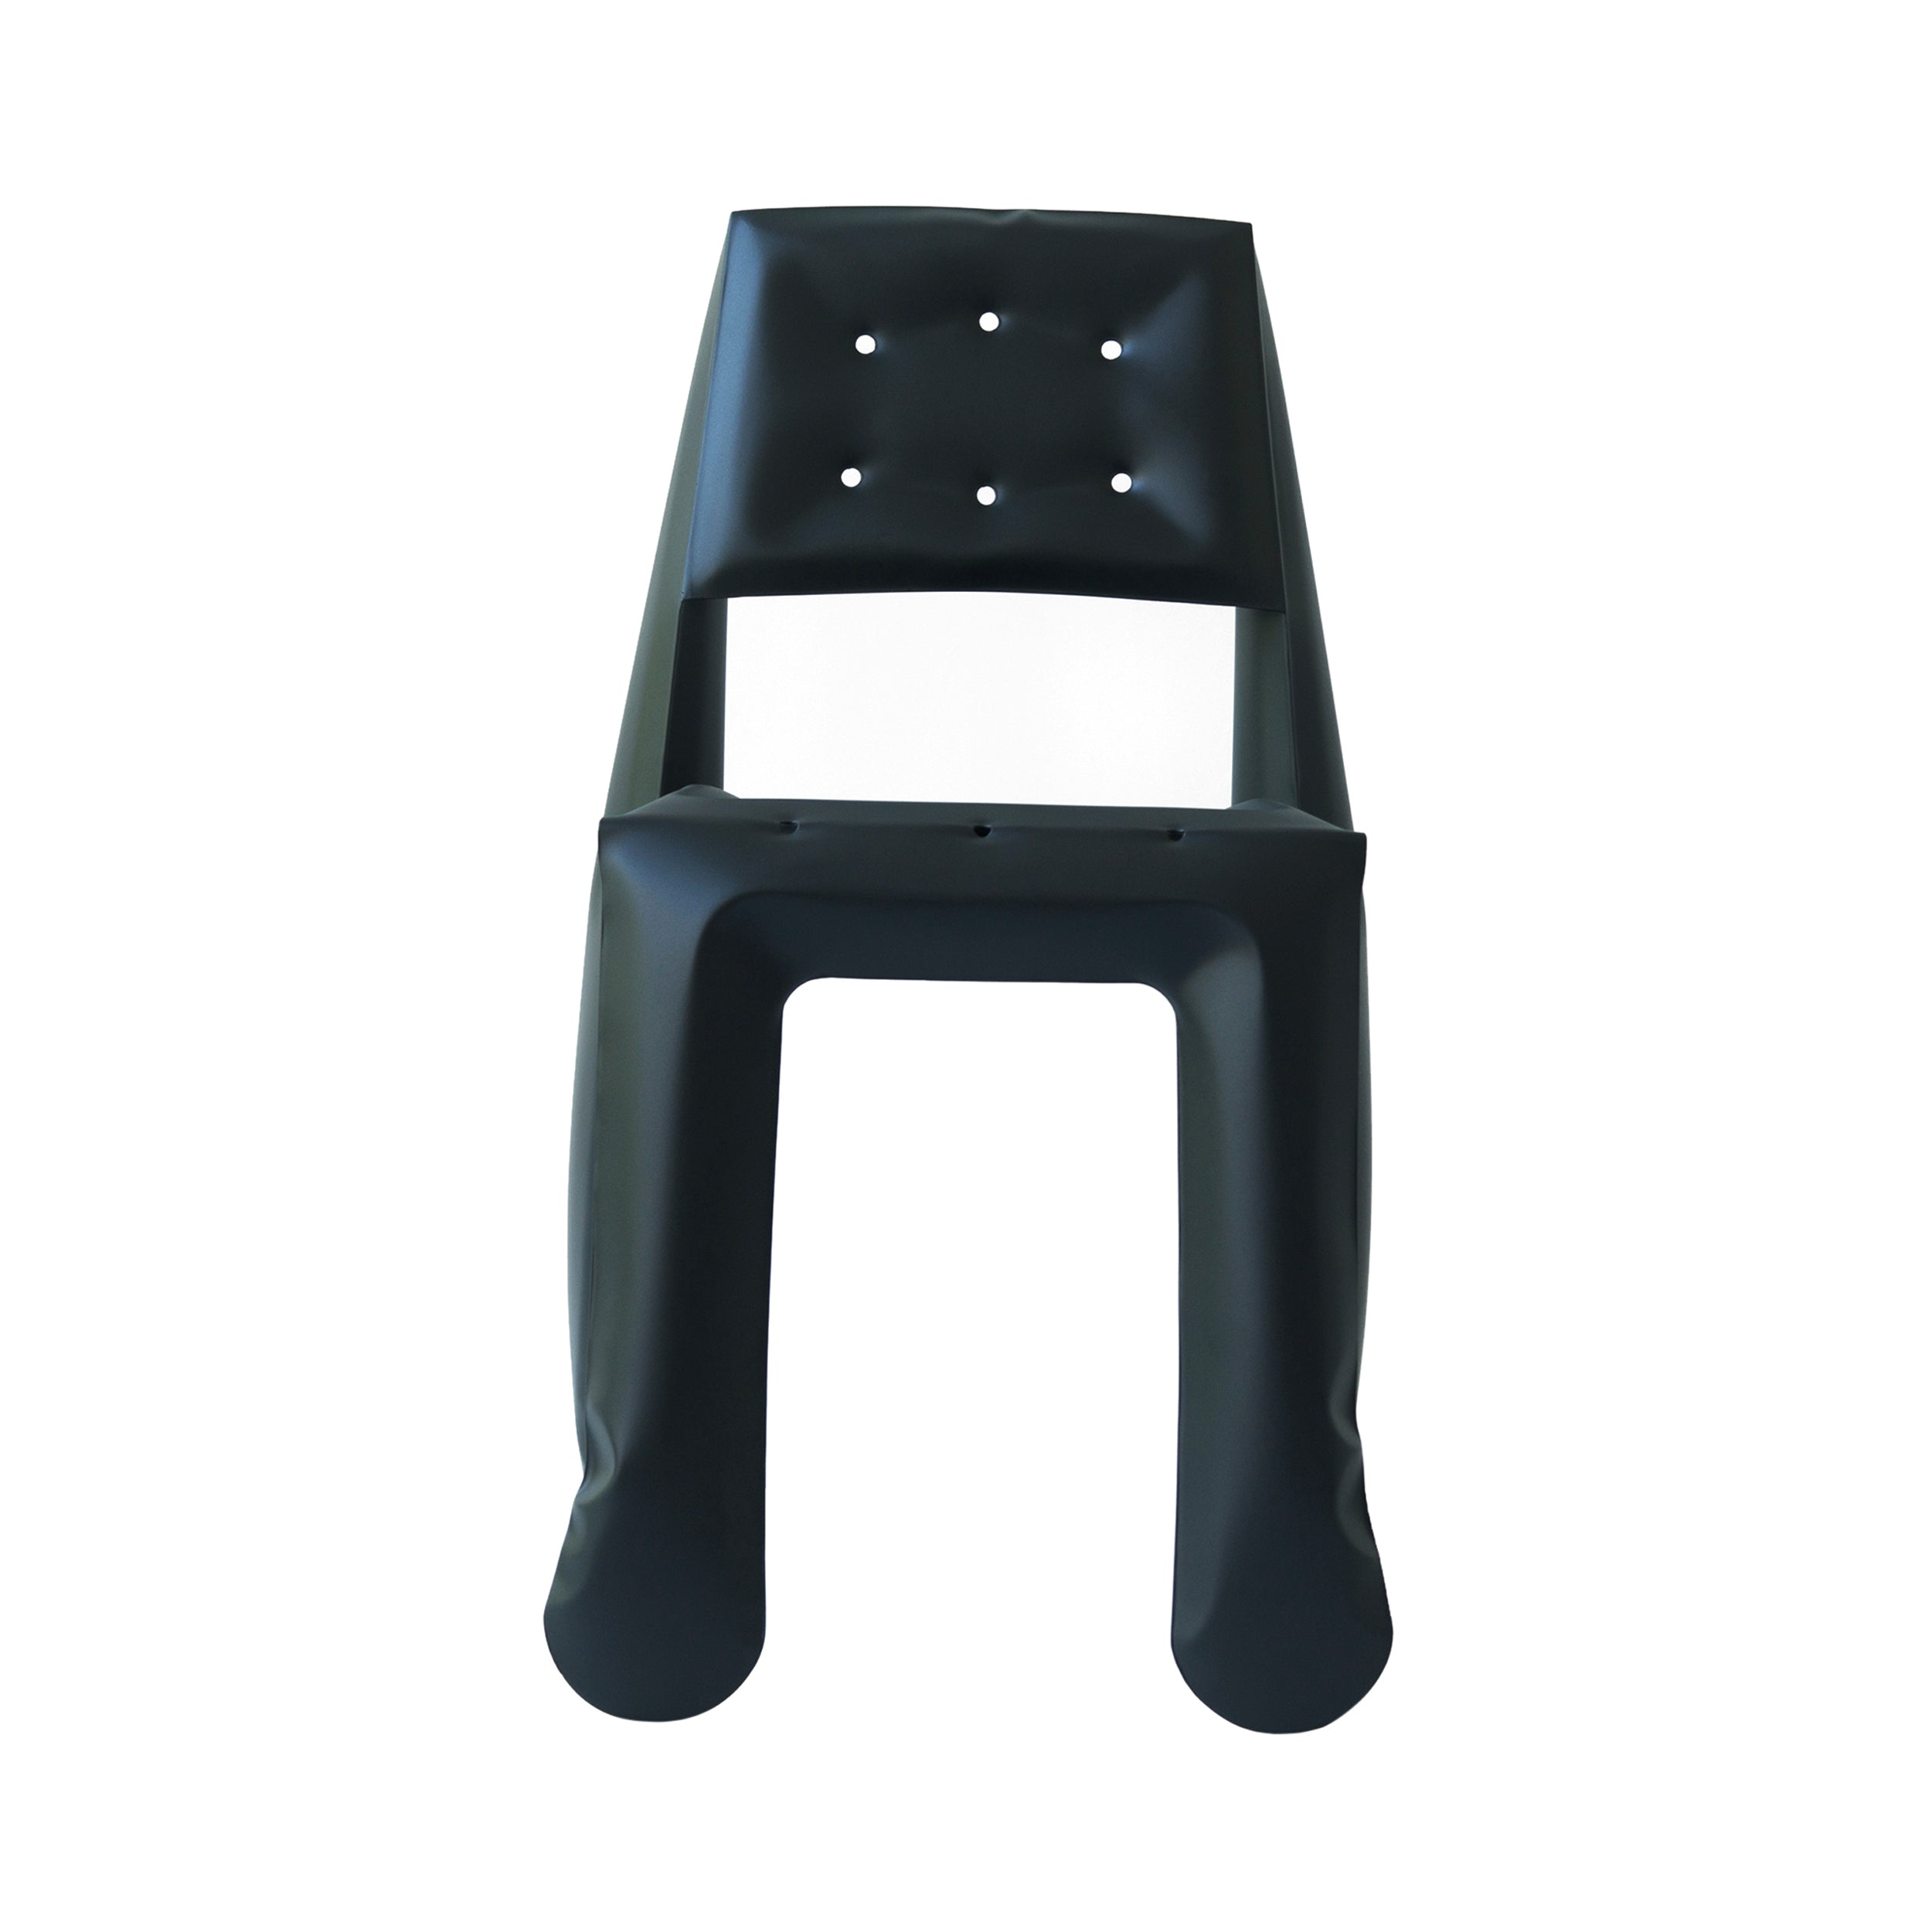 Chippensteel 0.5 Chair: Graphite Grey Carbon Steel